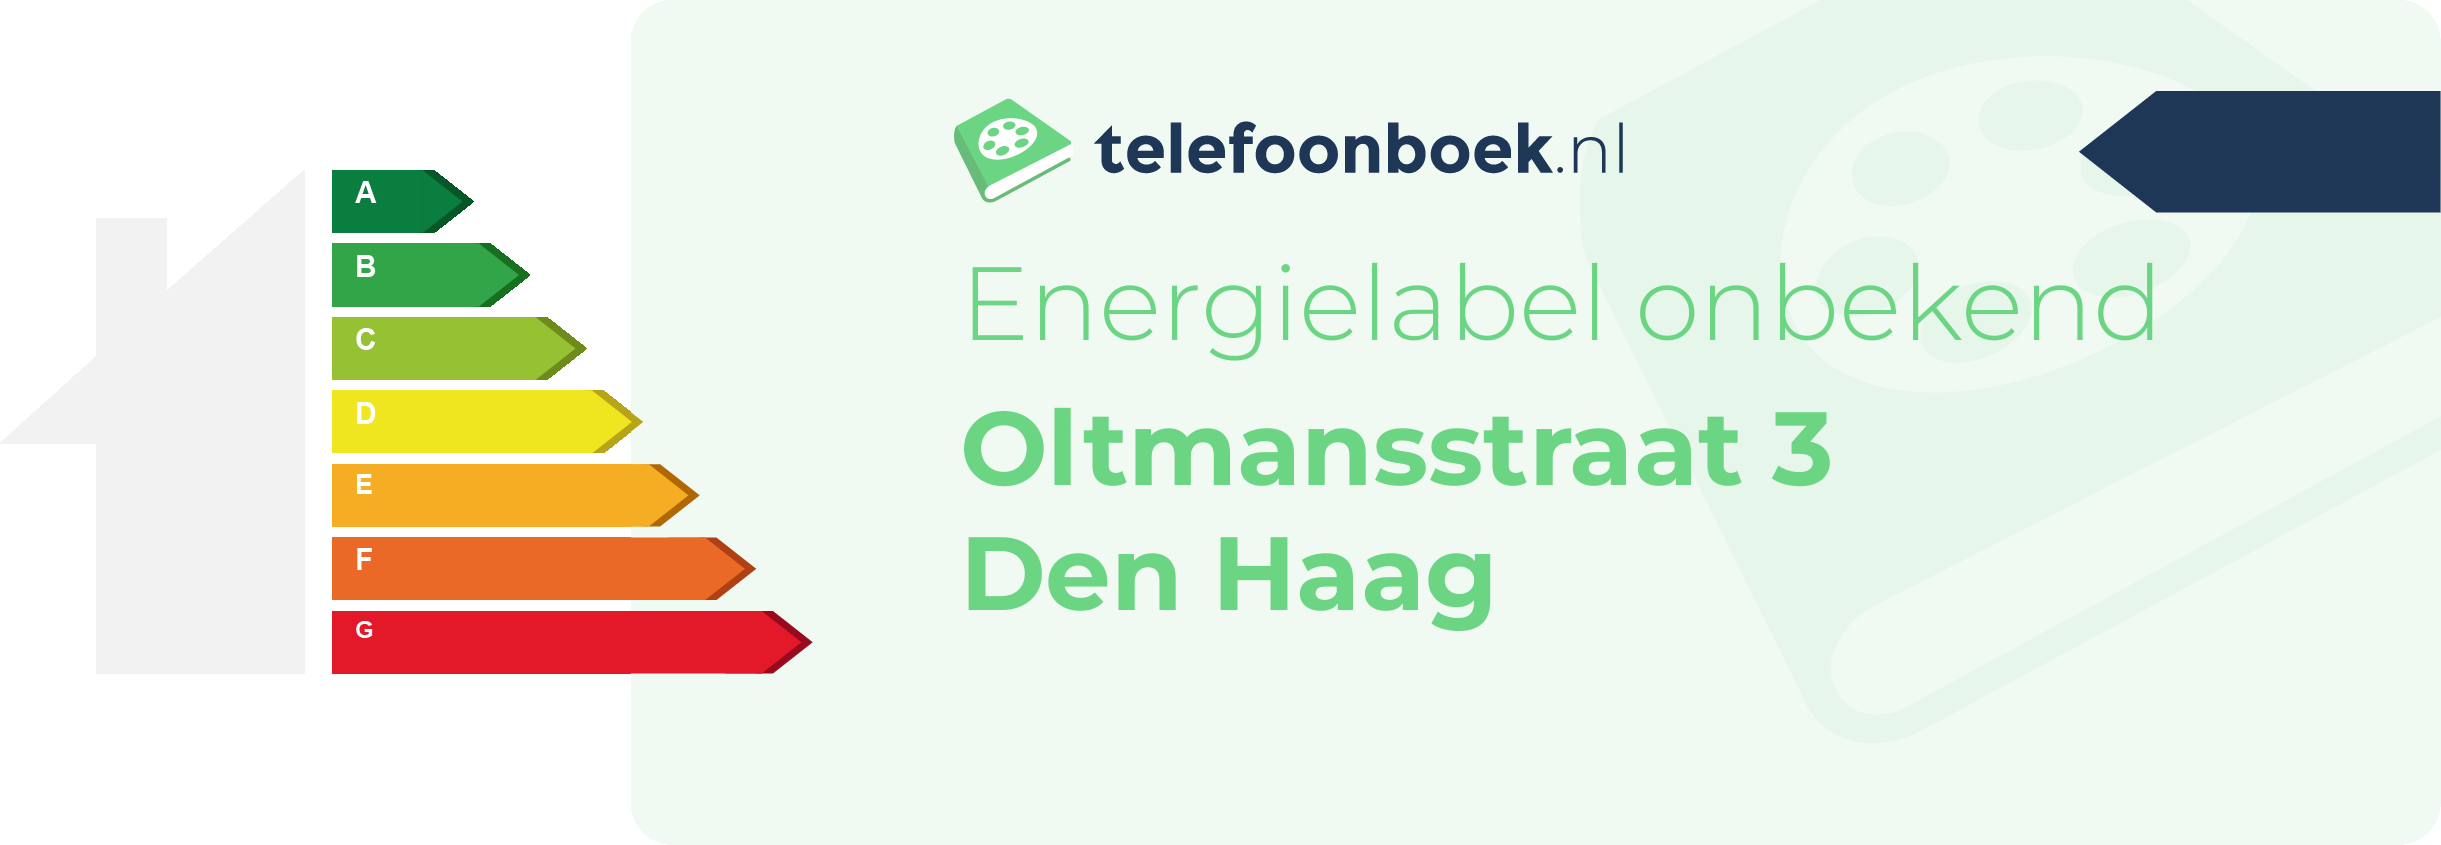 Energielabel Oltmansstraat 3 Den Haag